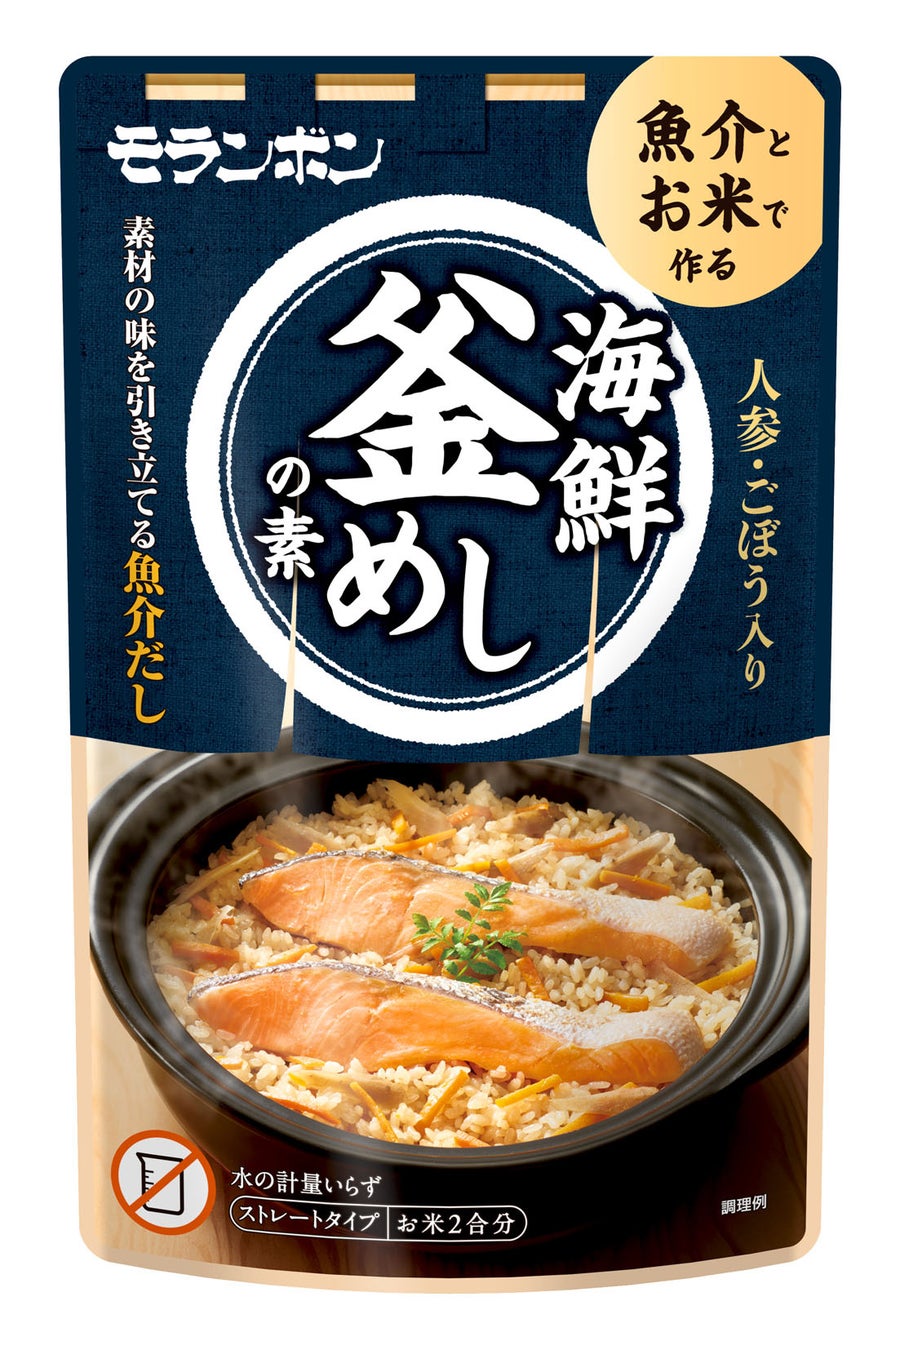 トレンドの“洋風×韓国”のフュージョン料理！パスタ感覚でトッポギが楽しめる「バジルクリームトッポギ」